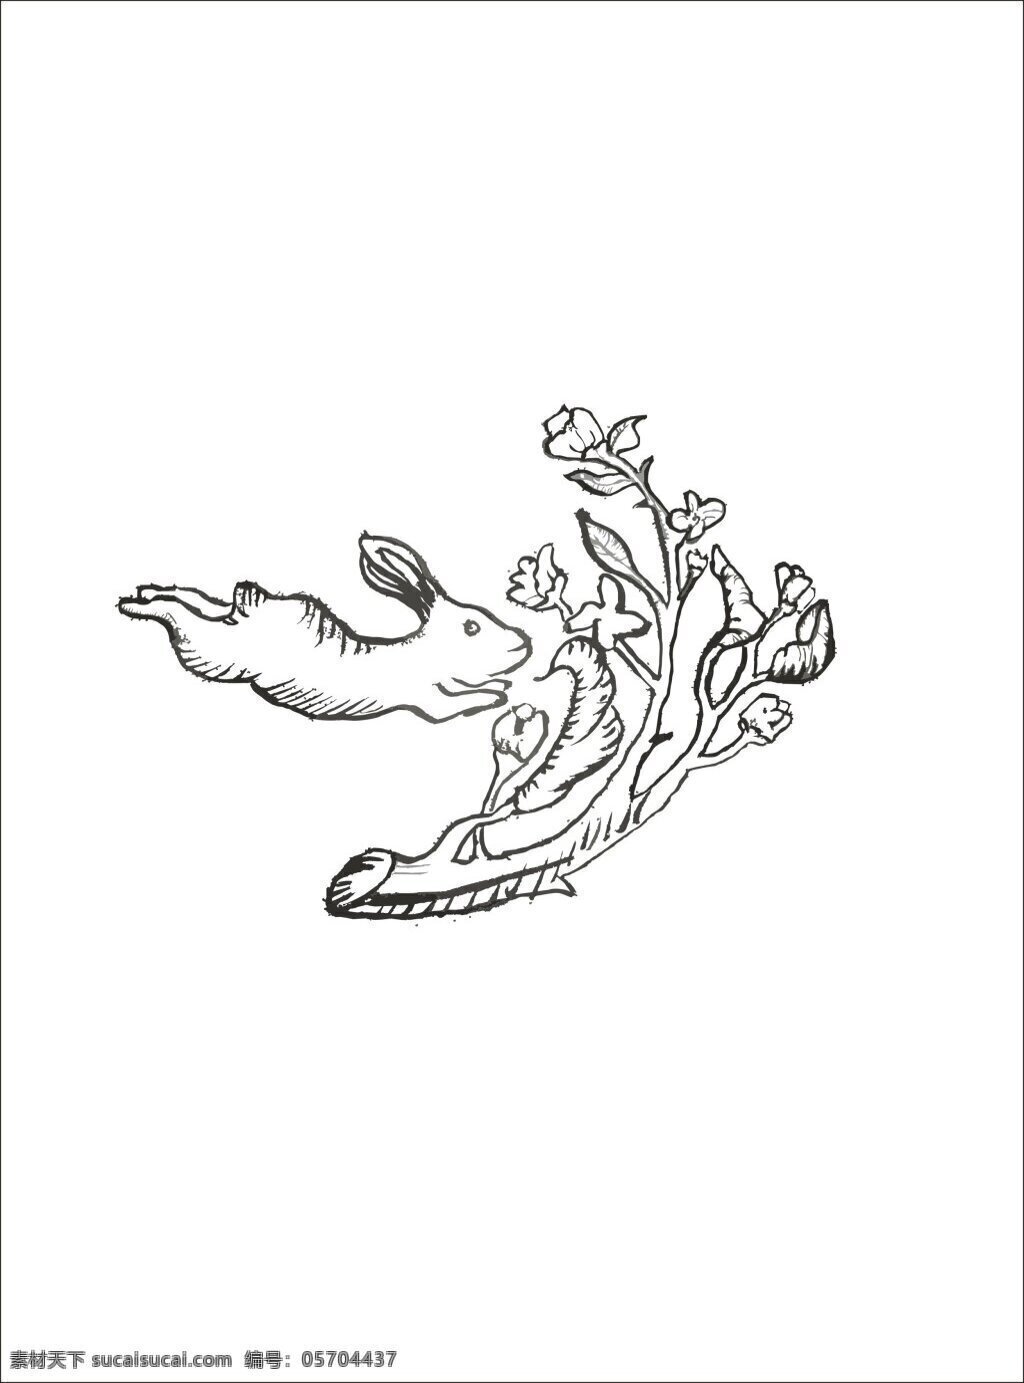 植物手绘兔子 植物手绘 线描手绘 兔子手绘 装饰图案